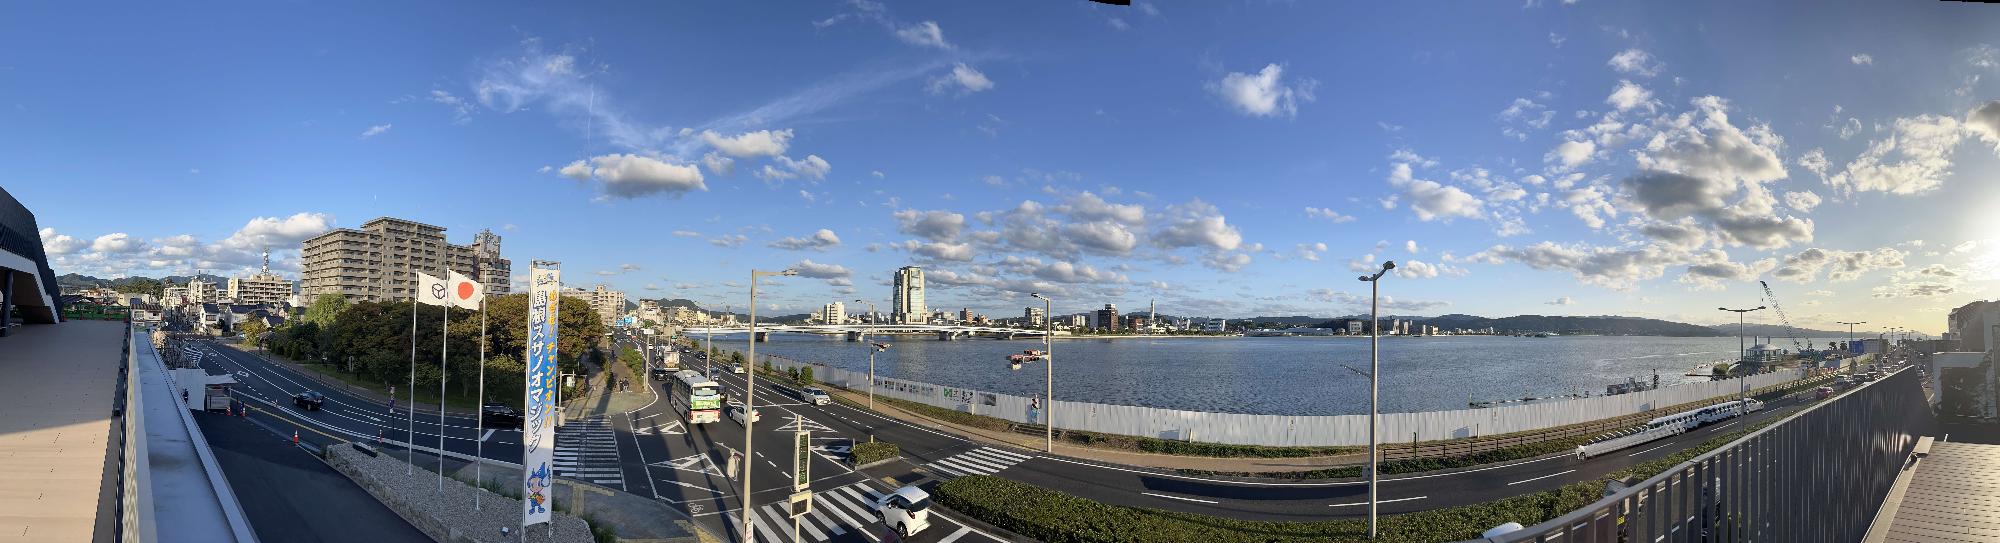 市役所のテラスから見える松江の景色の写真